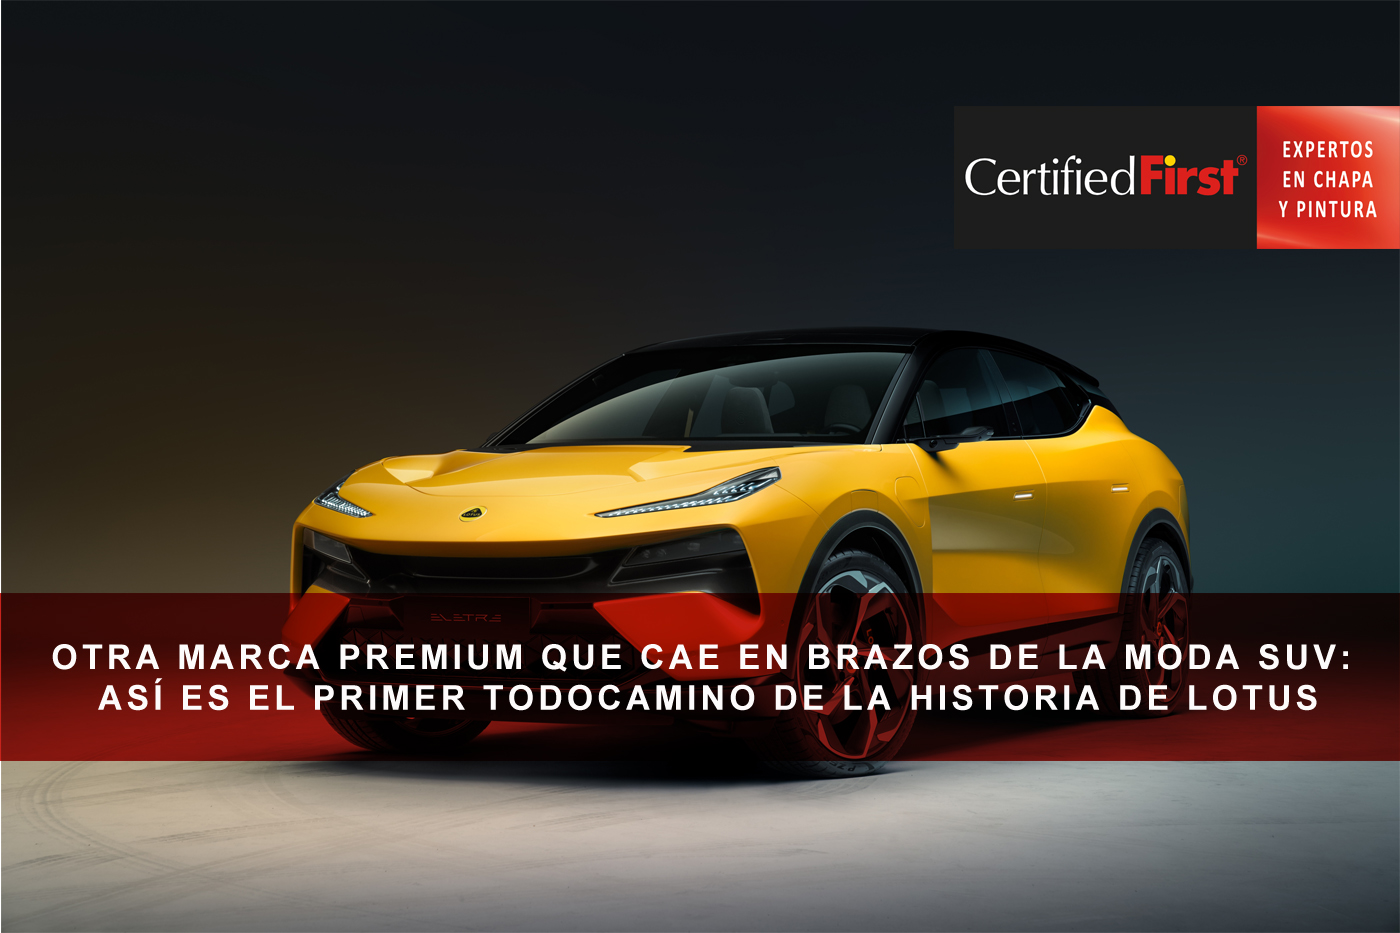 Otra marca premium que cae en brazos de la moda SUV: así es el primer todocamino de la historia de Lotus